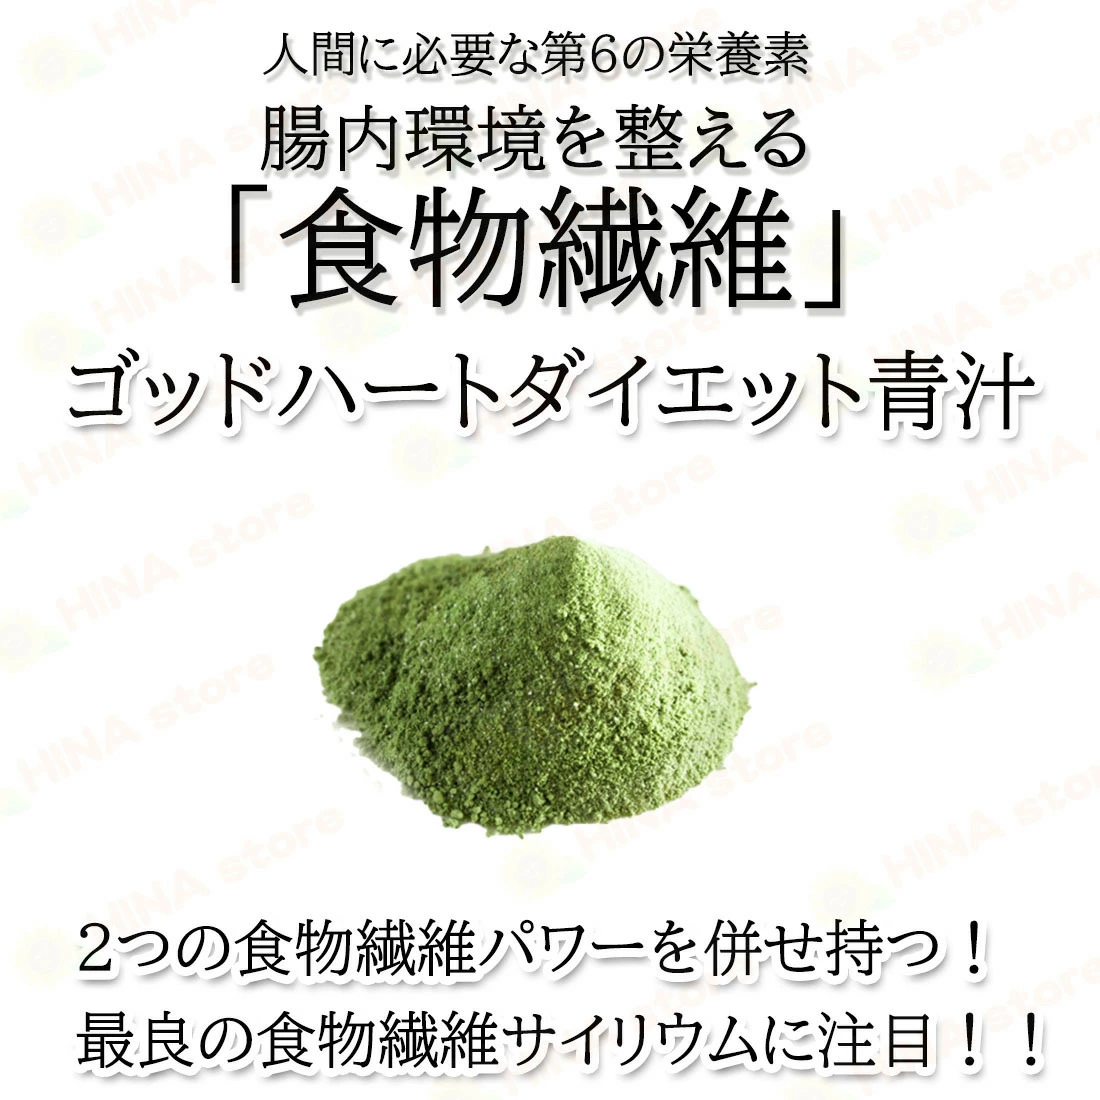 銀座まるかんダイエット青汁 2箱 賞味期限24年6月 - ダイエット